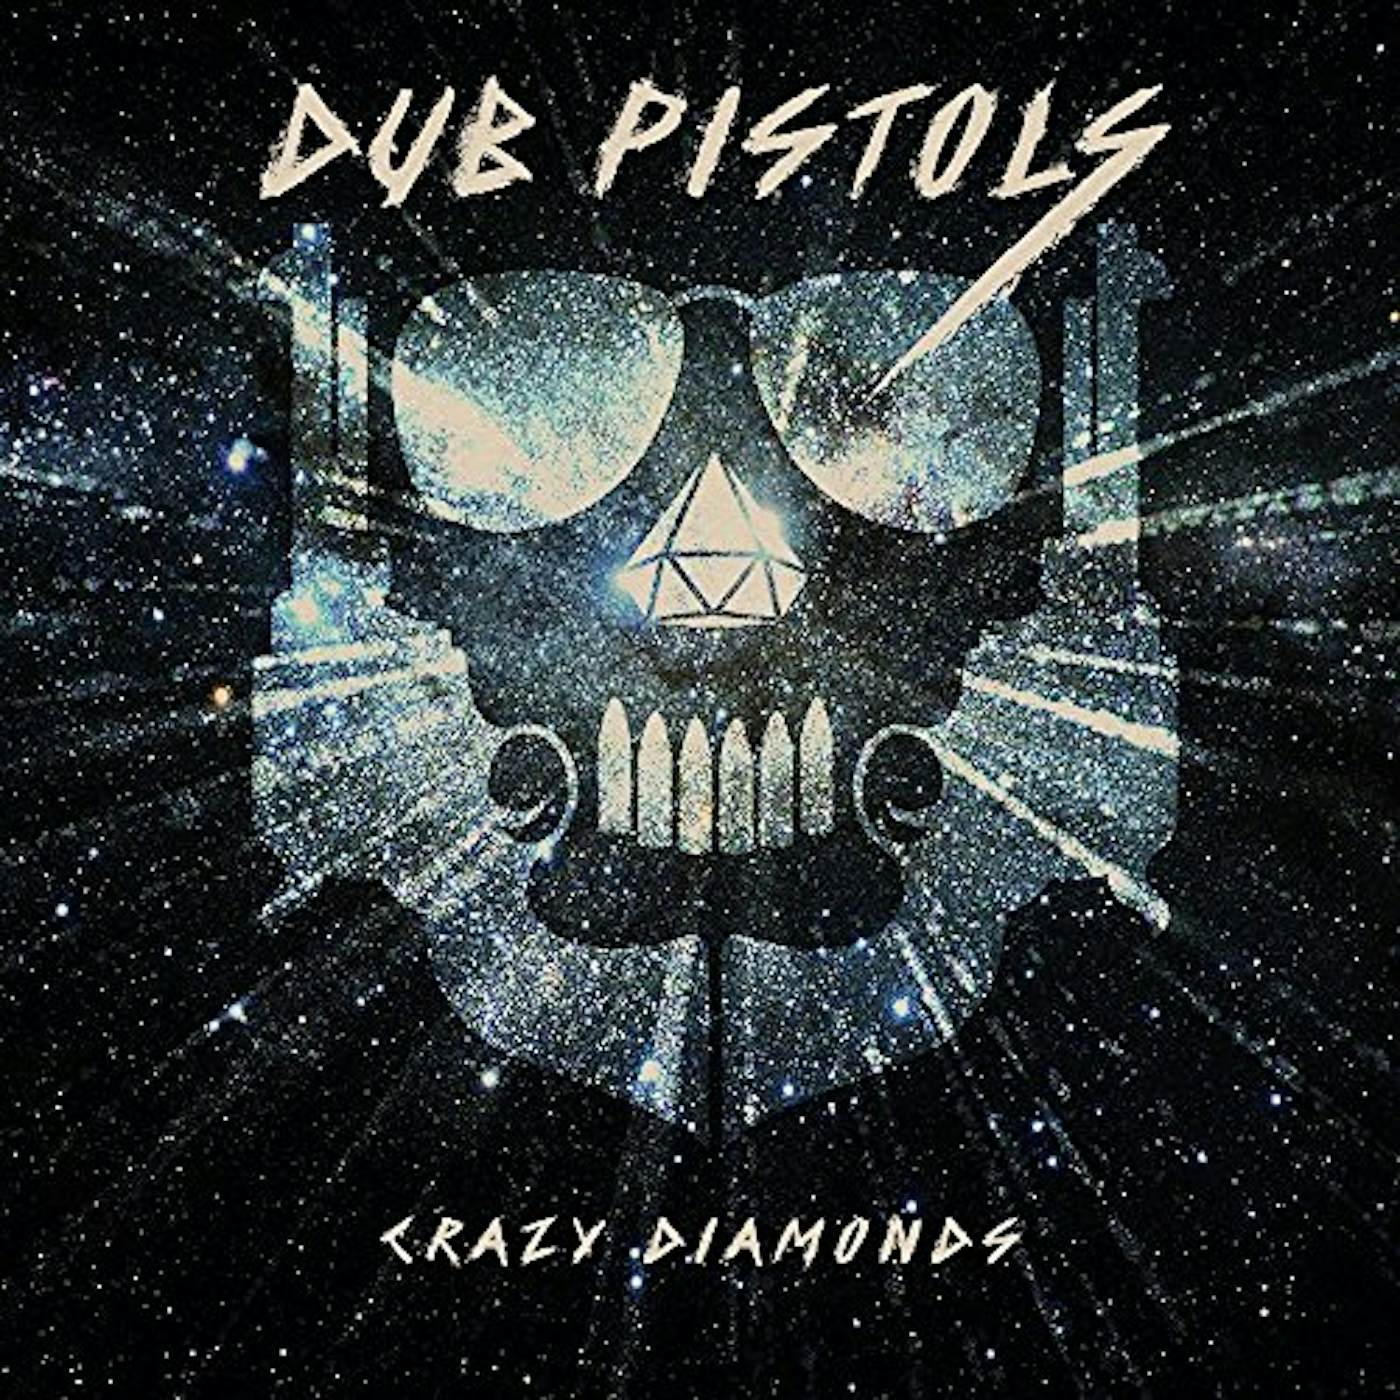 Dub Pistols Crazy Diamonds Vinyl Record